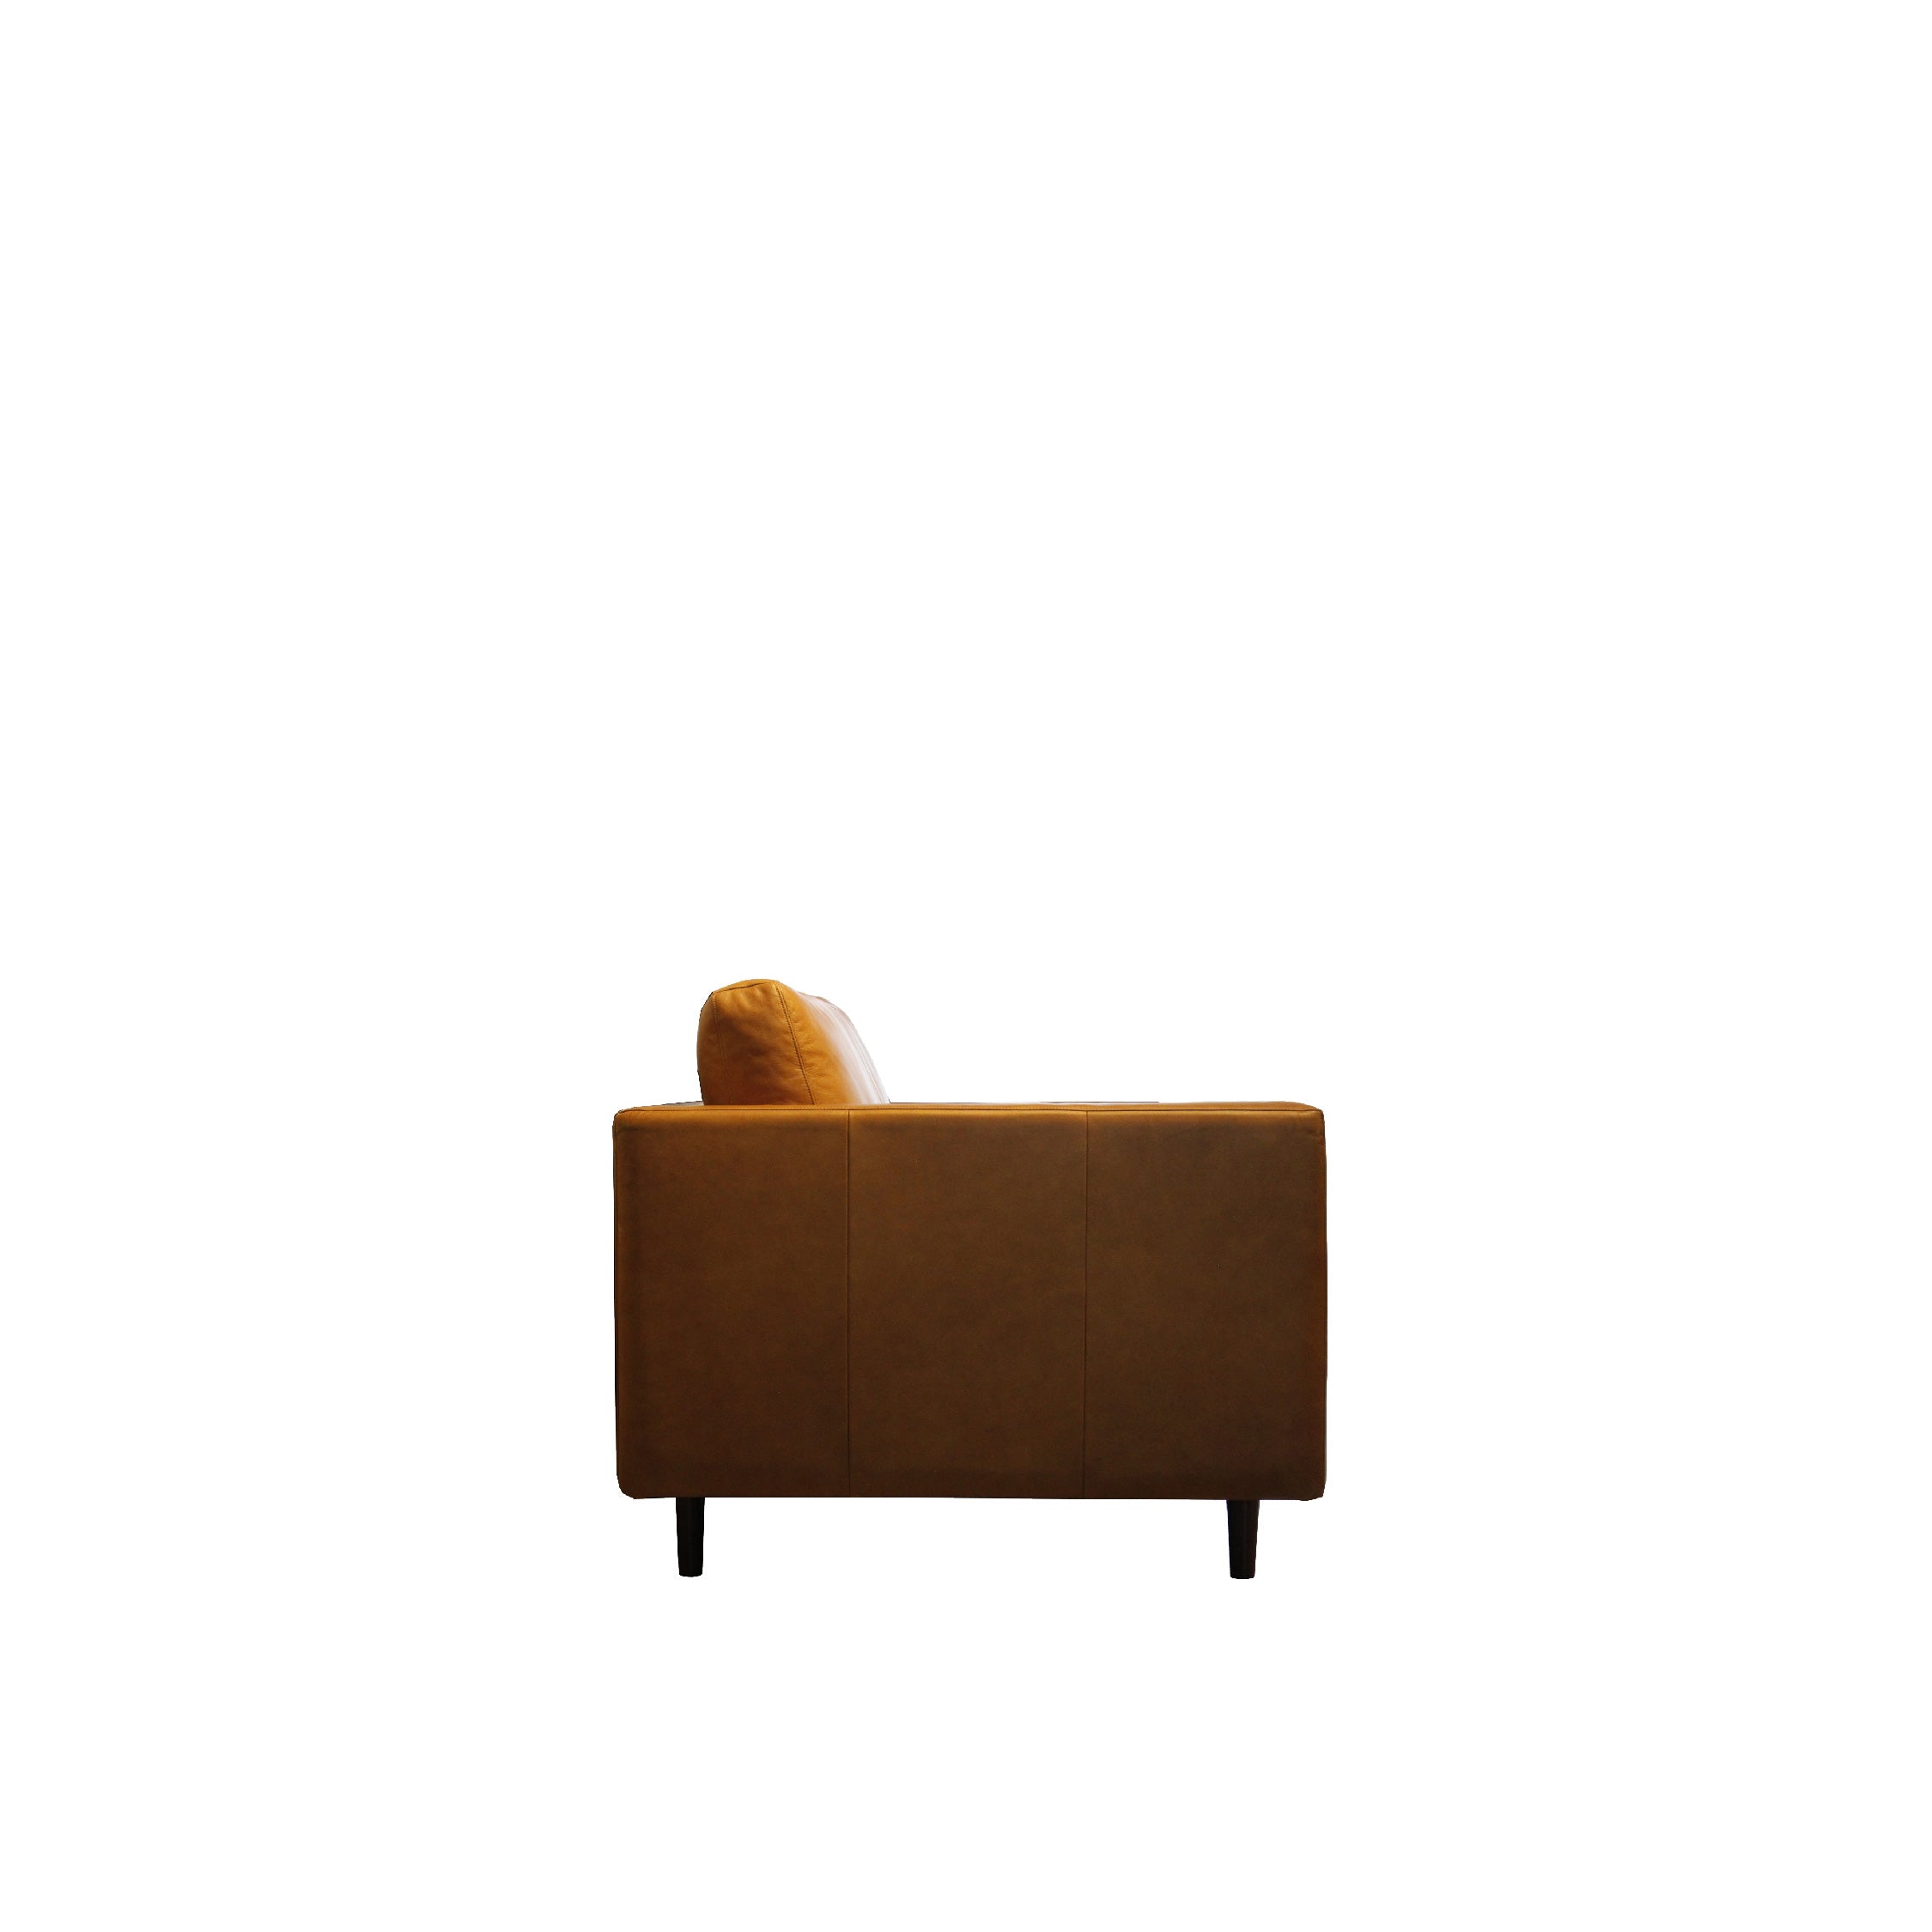 NORDI Sofa 3 Seater Premium (Leather)